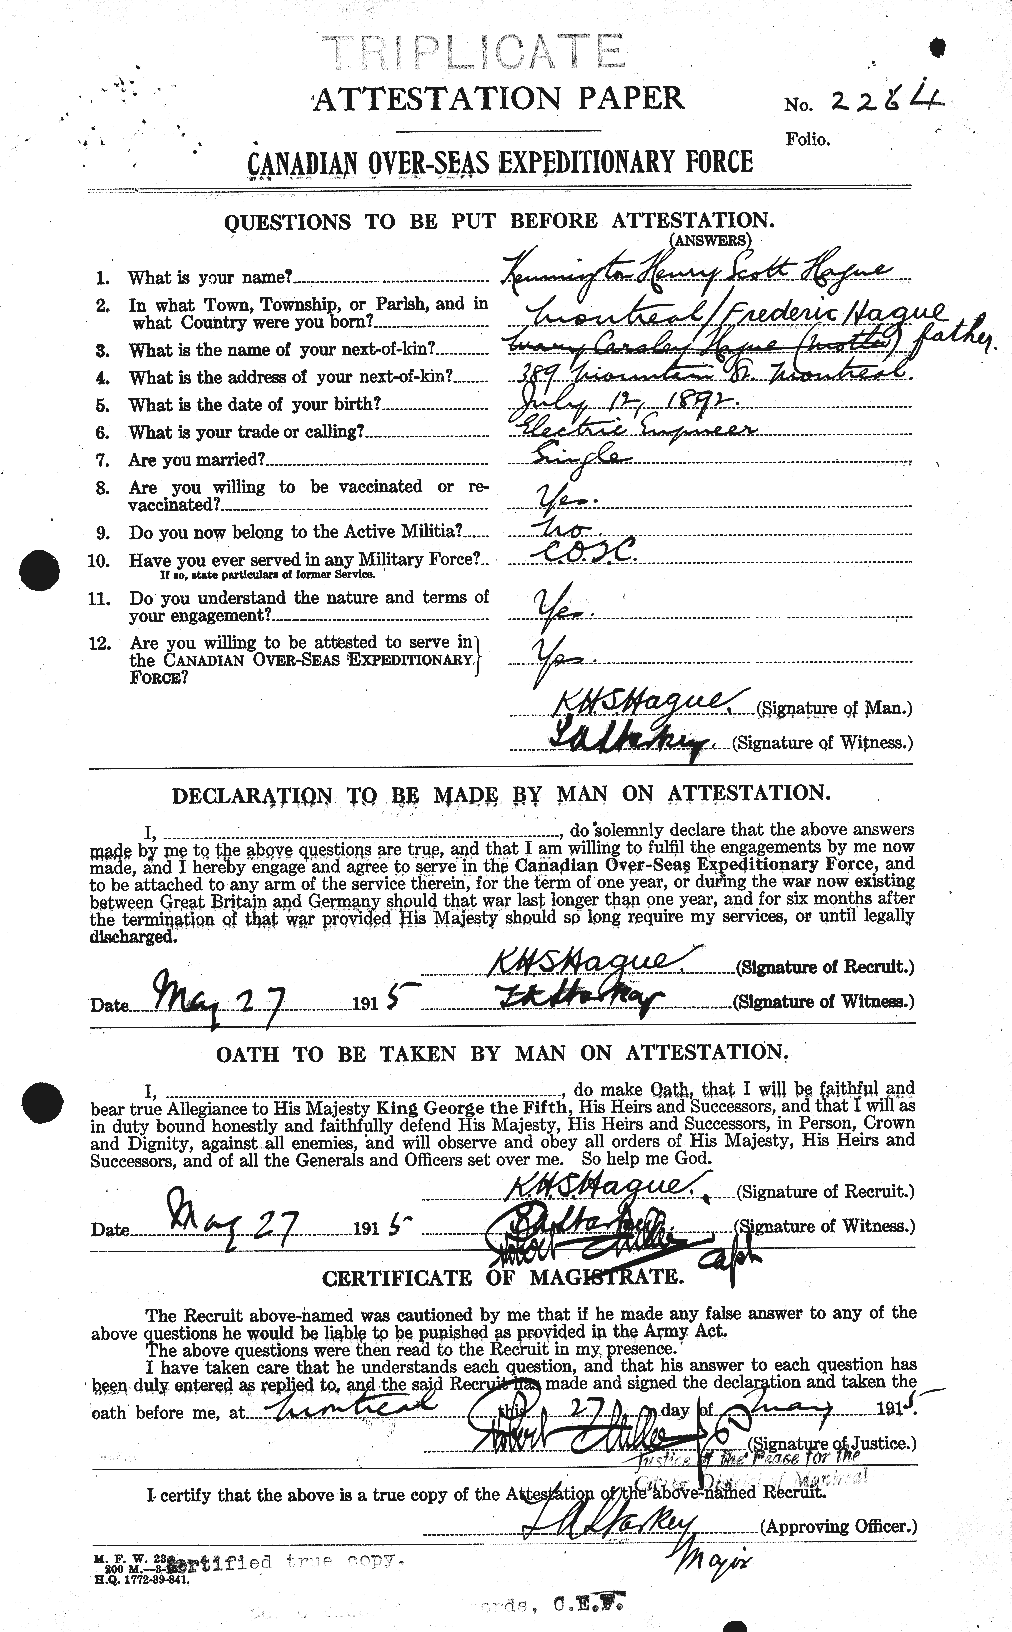 Dossiers du Personnel de la Première Guerre mondiale - CEC 368911a